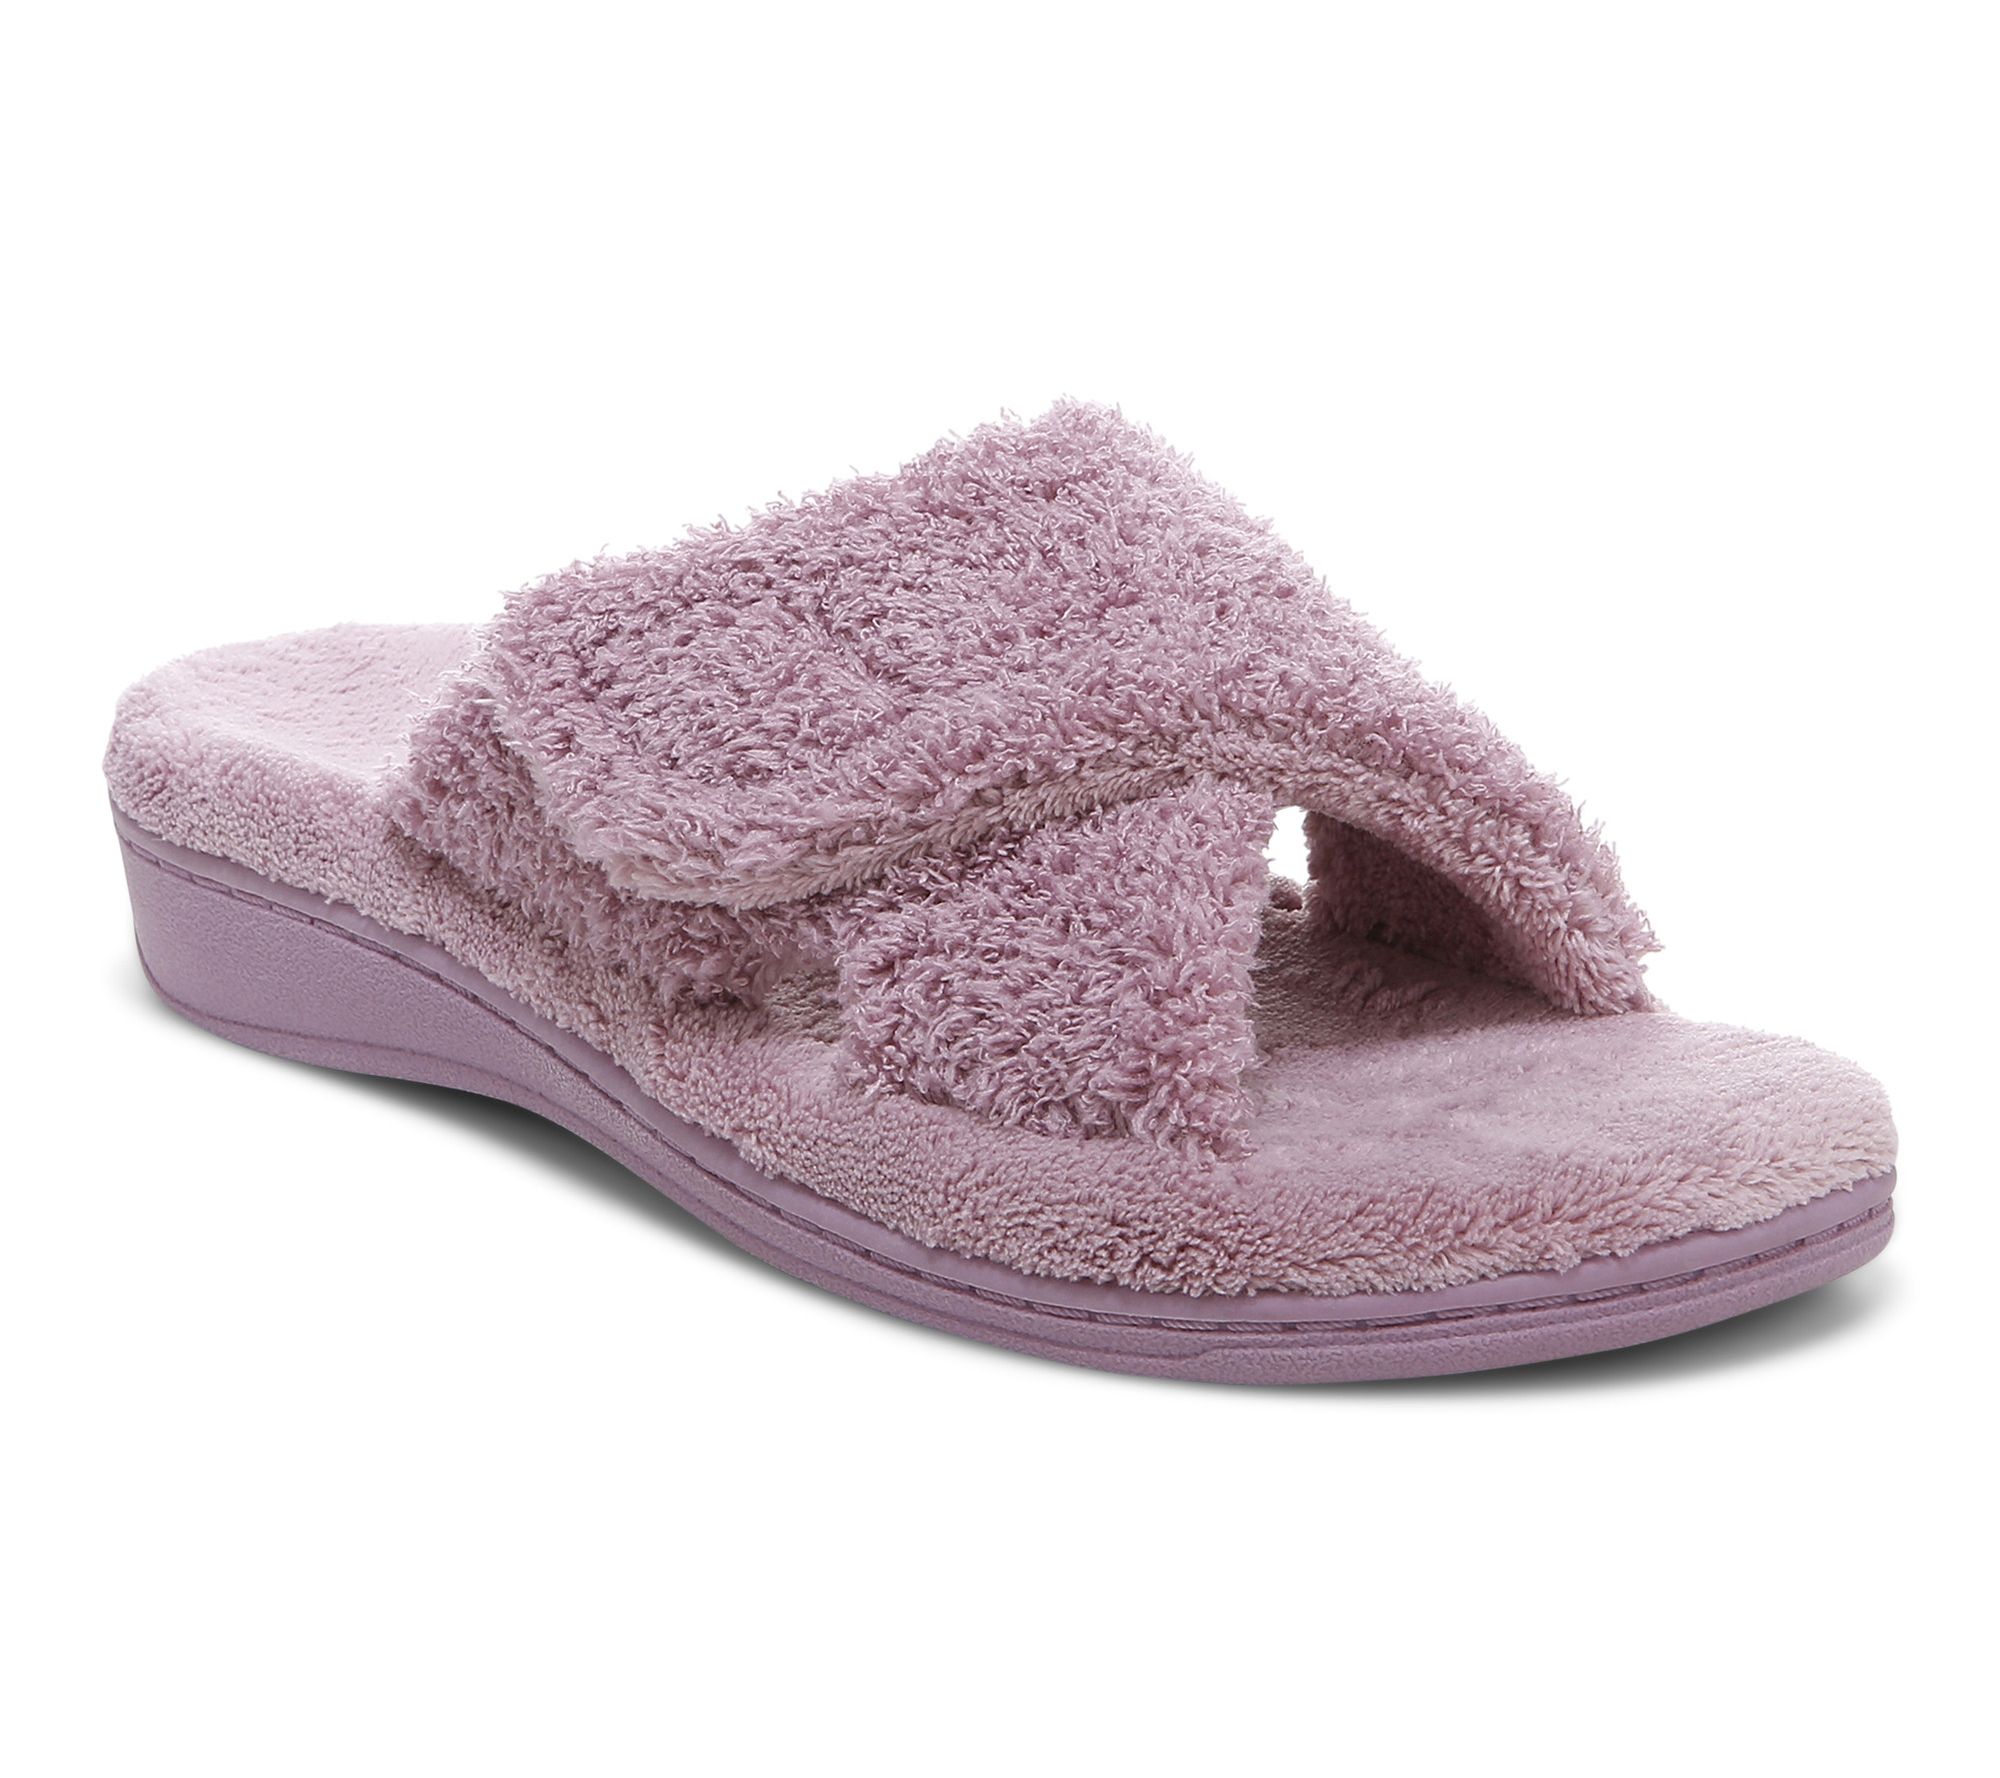 vionic slippers on qvc